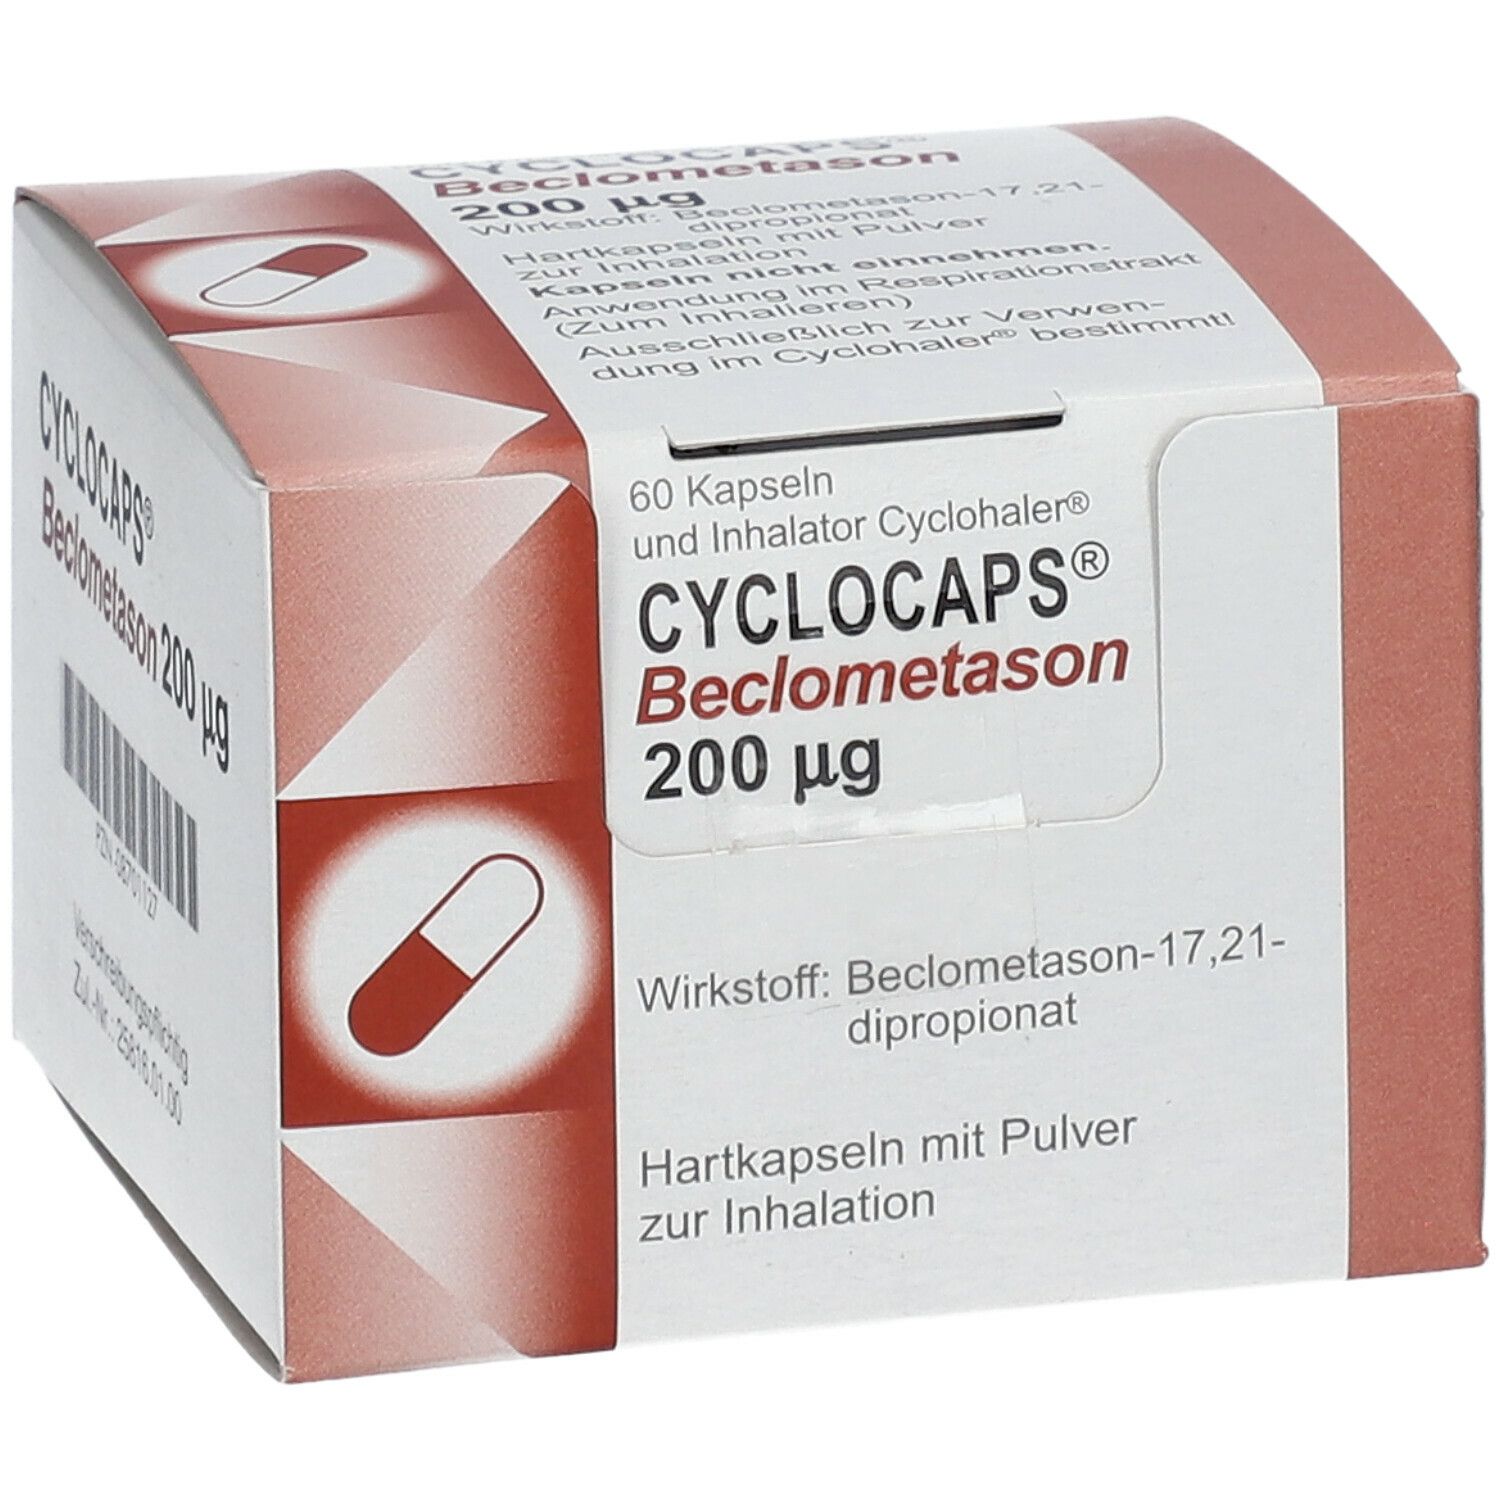 Cyclocaps Beclometason 200ug Inh.Kaps.+Cycloh.